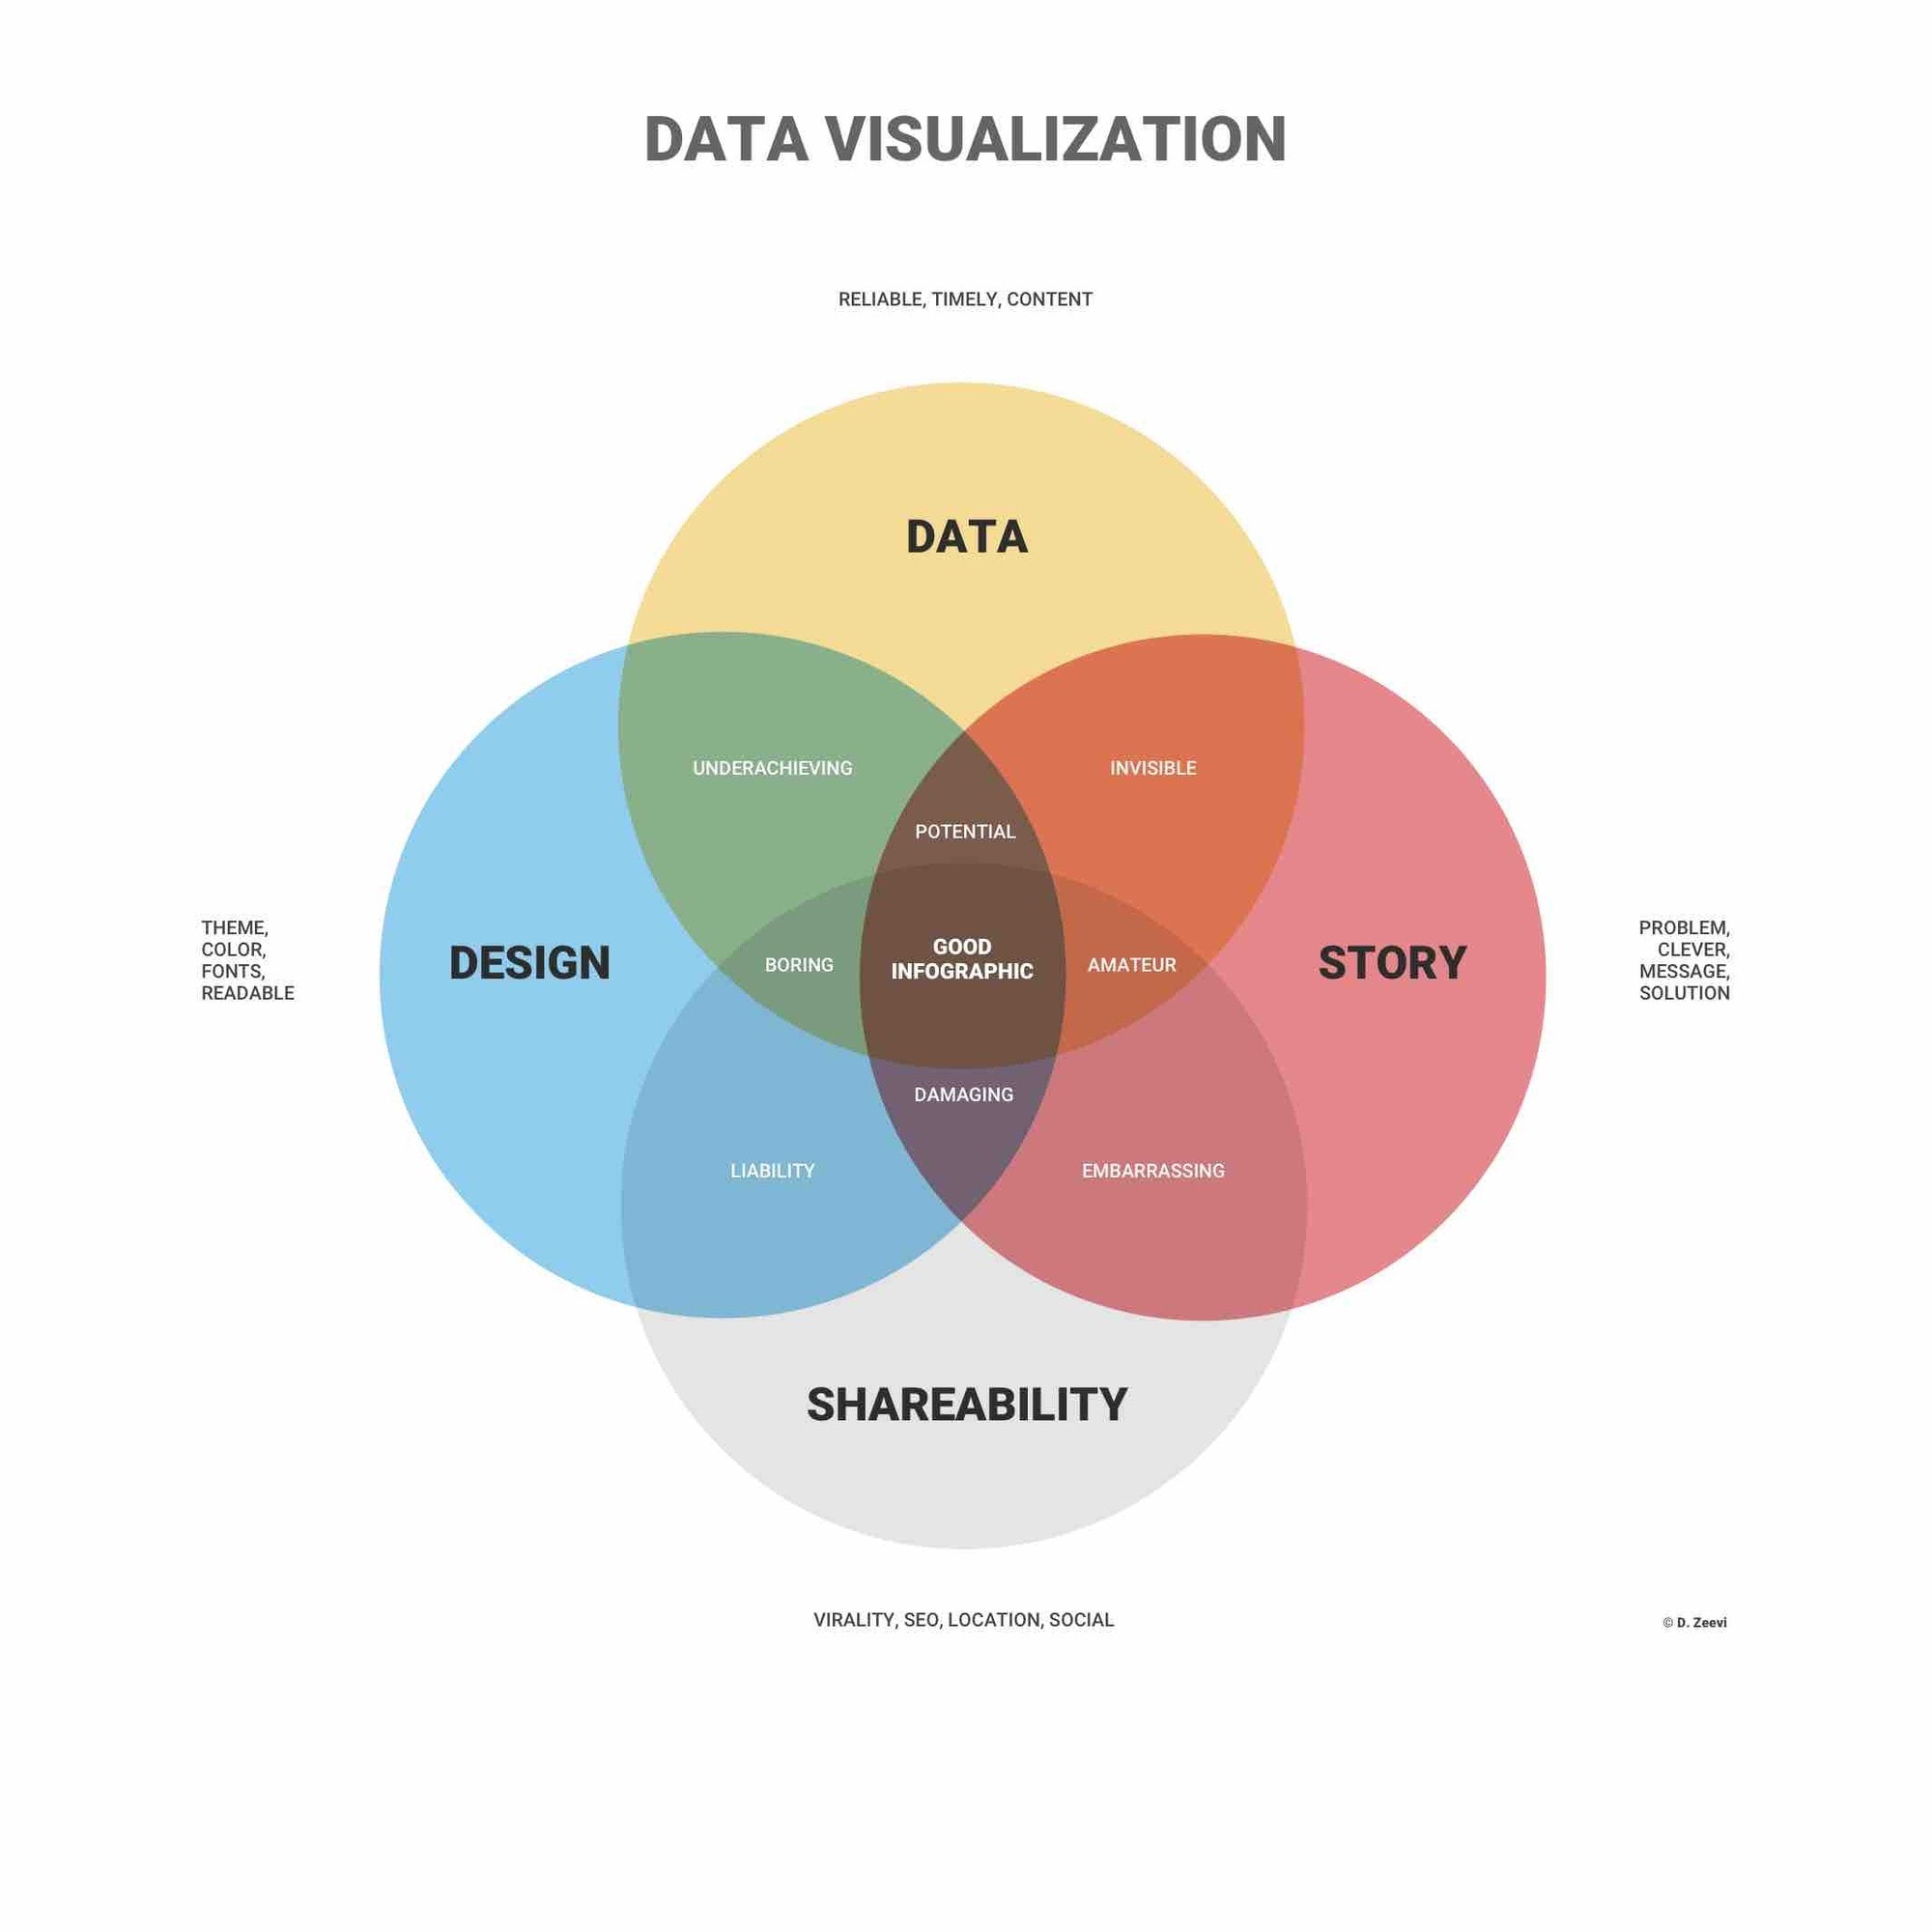 data visualization